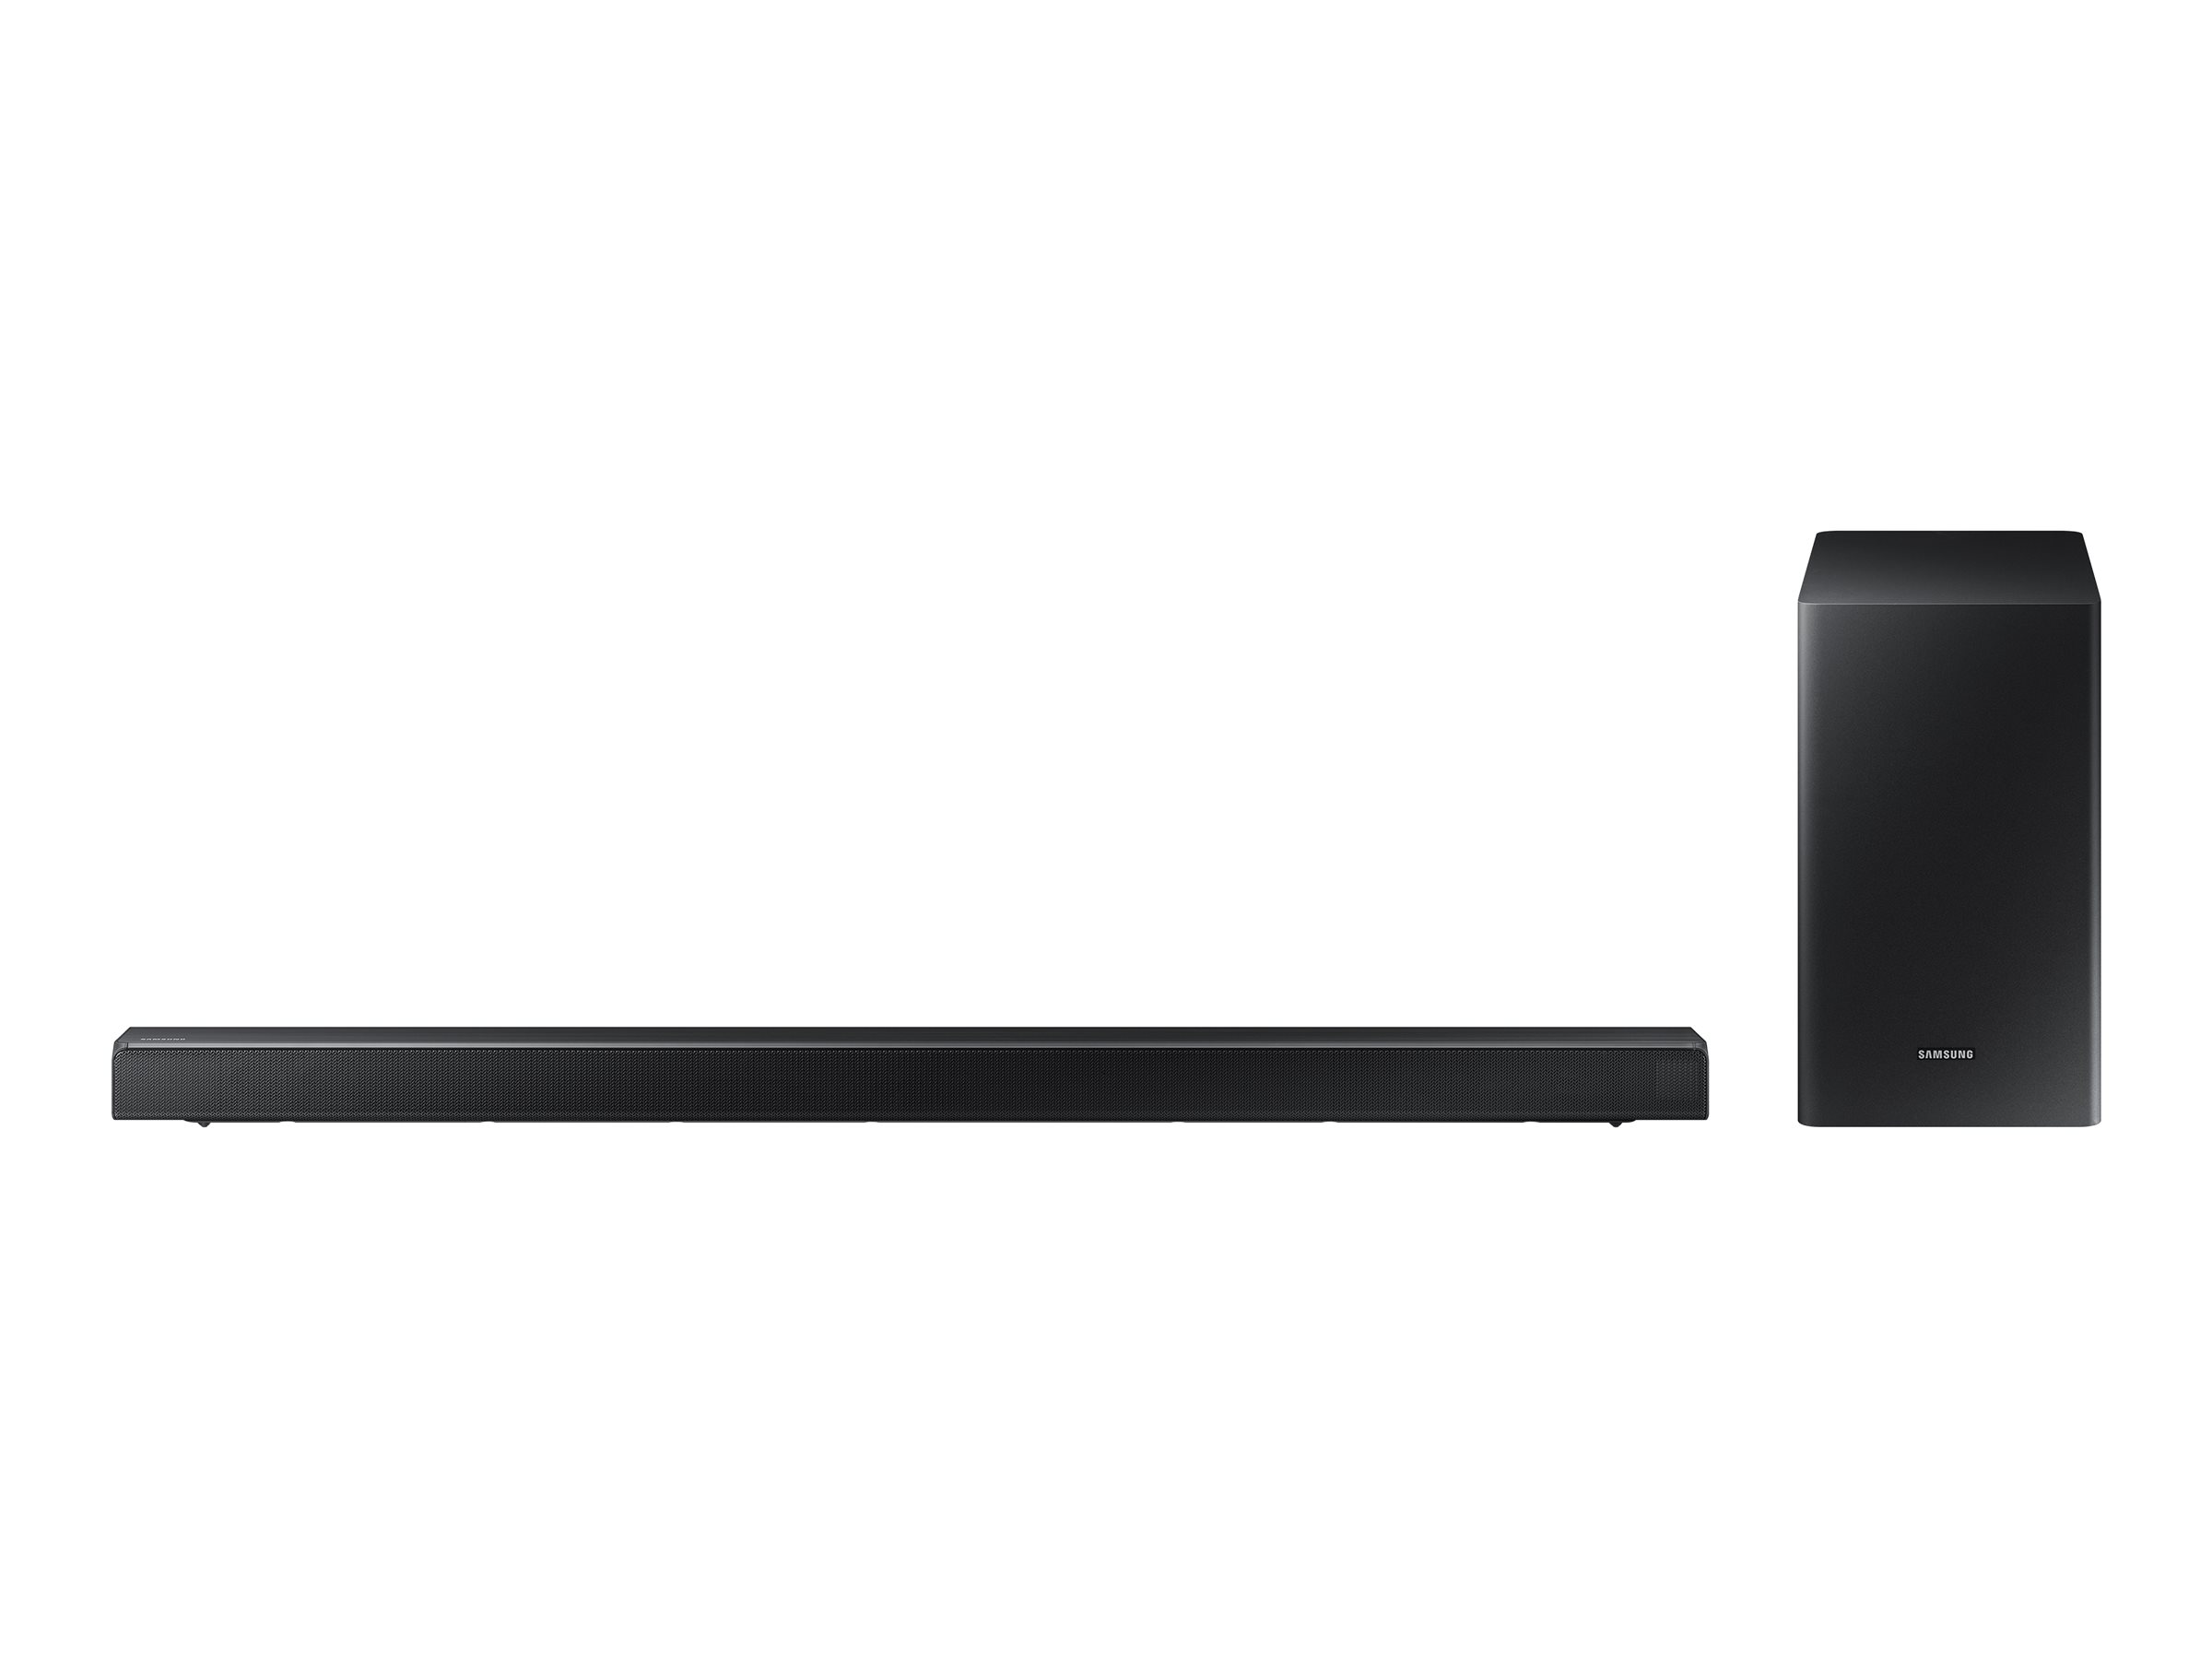 Samsung HW-R650 - Sound bar system